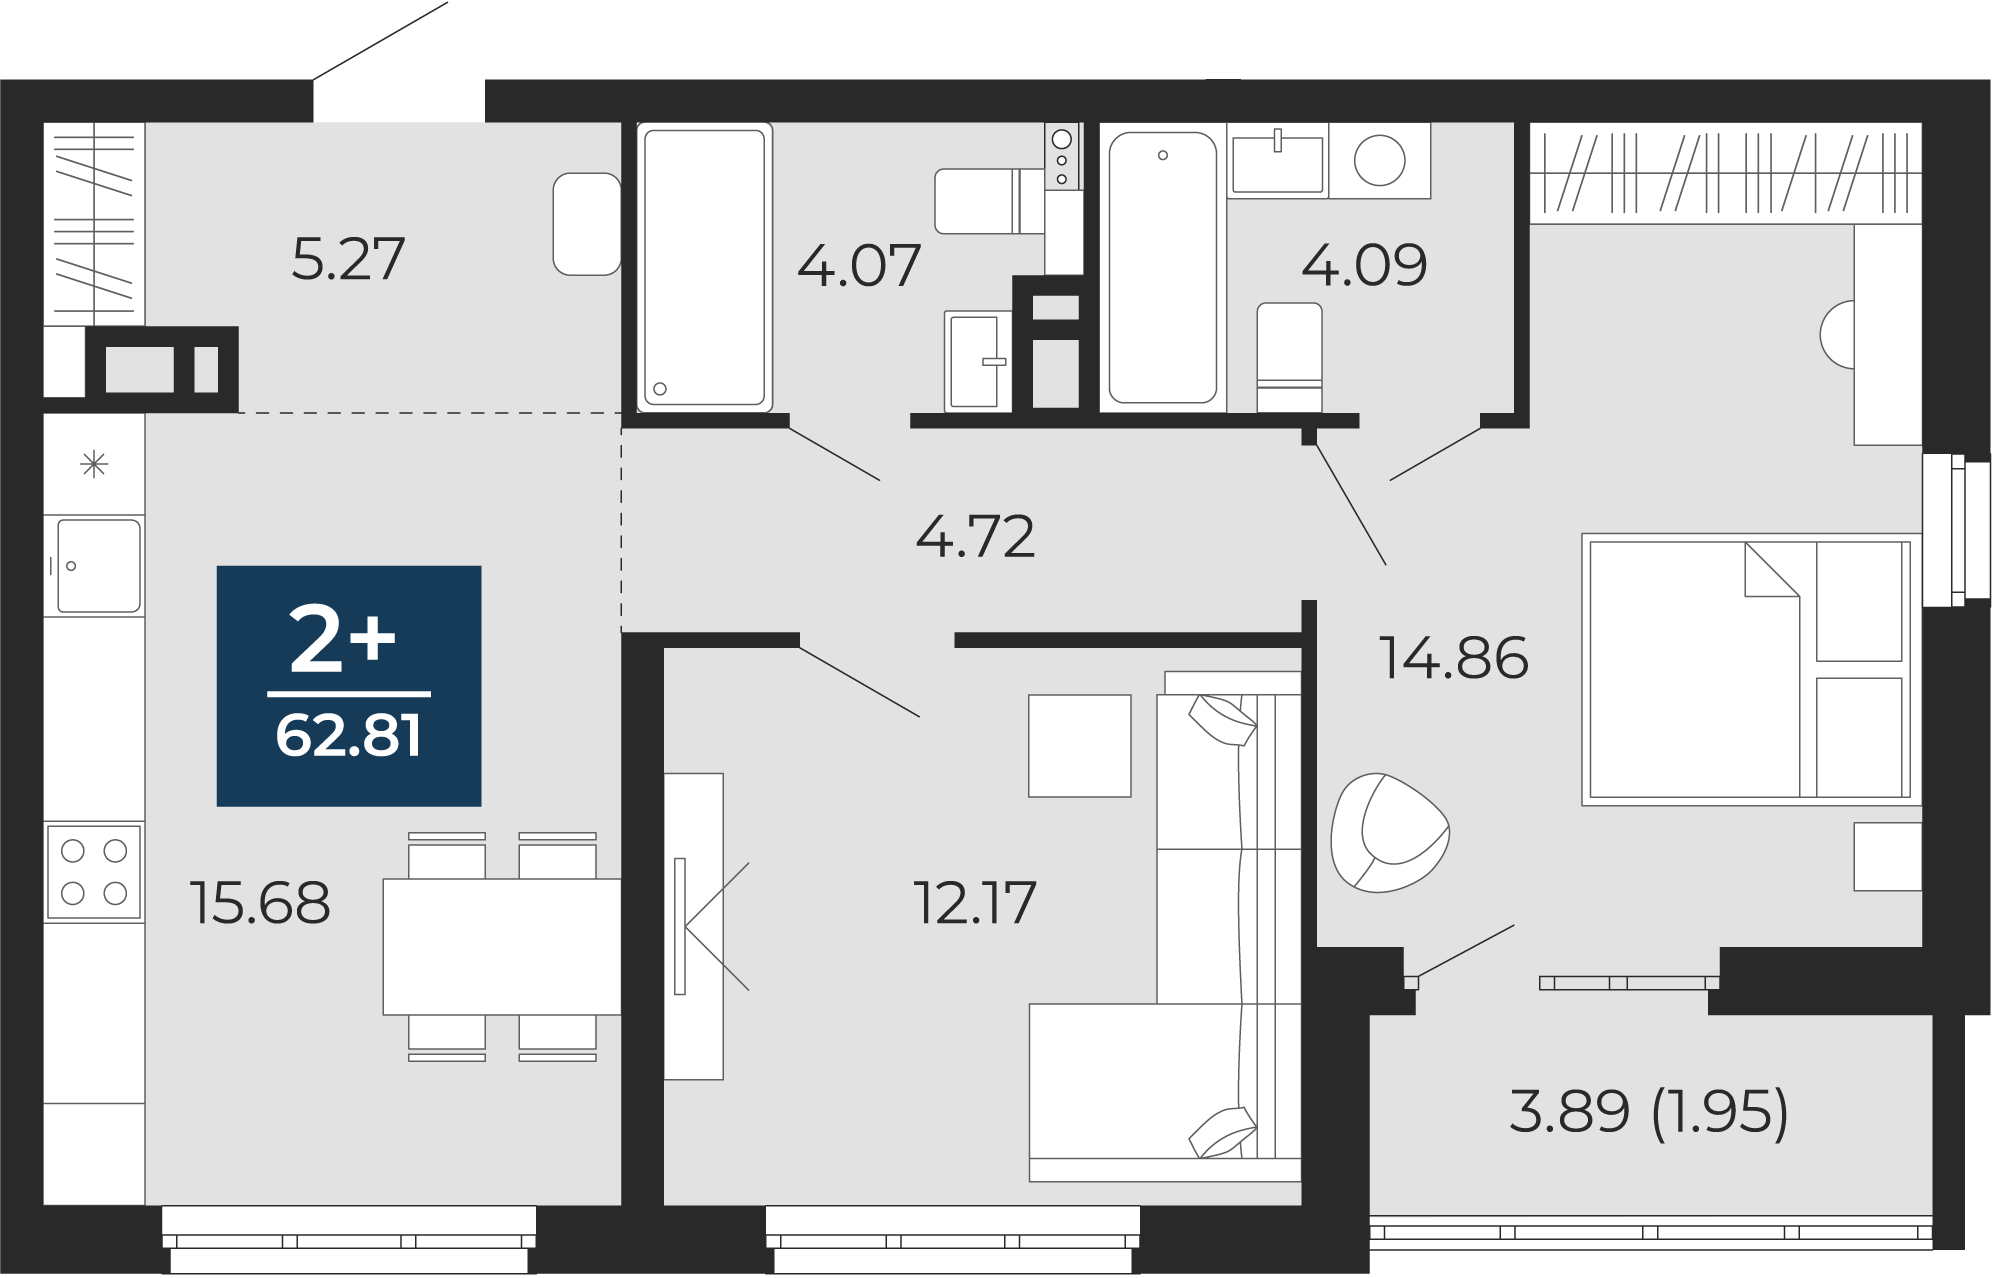 Квартира № 300, 2-комнатная, 62.81 кв. м, 3 этаж